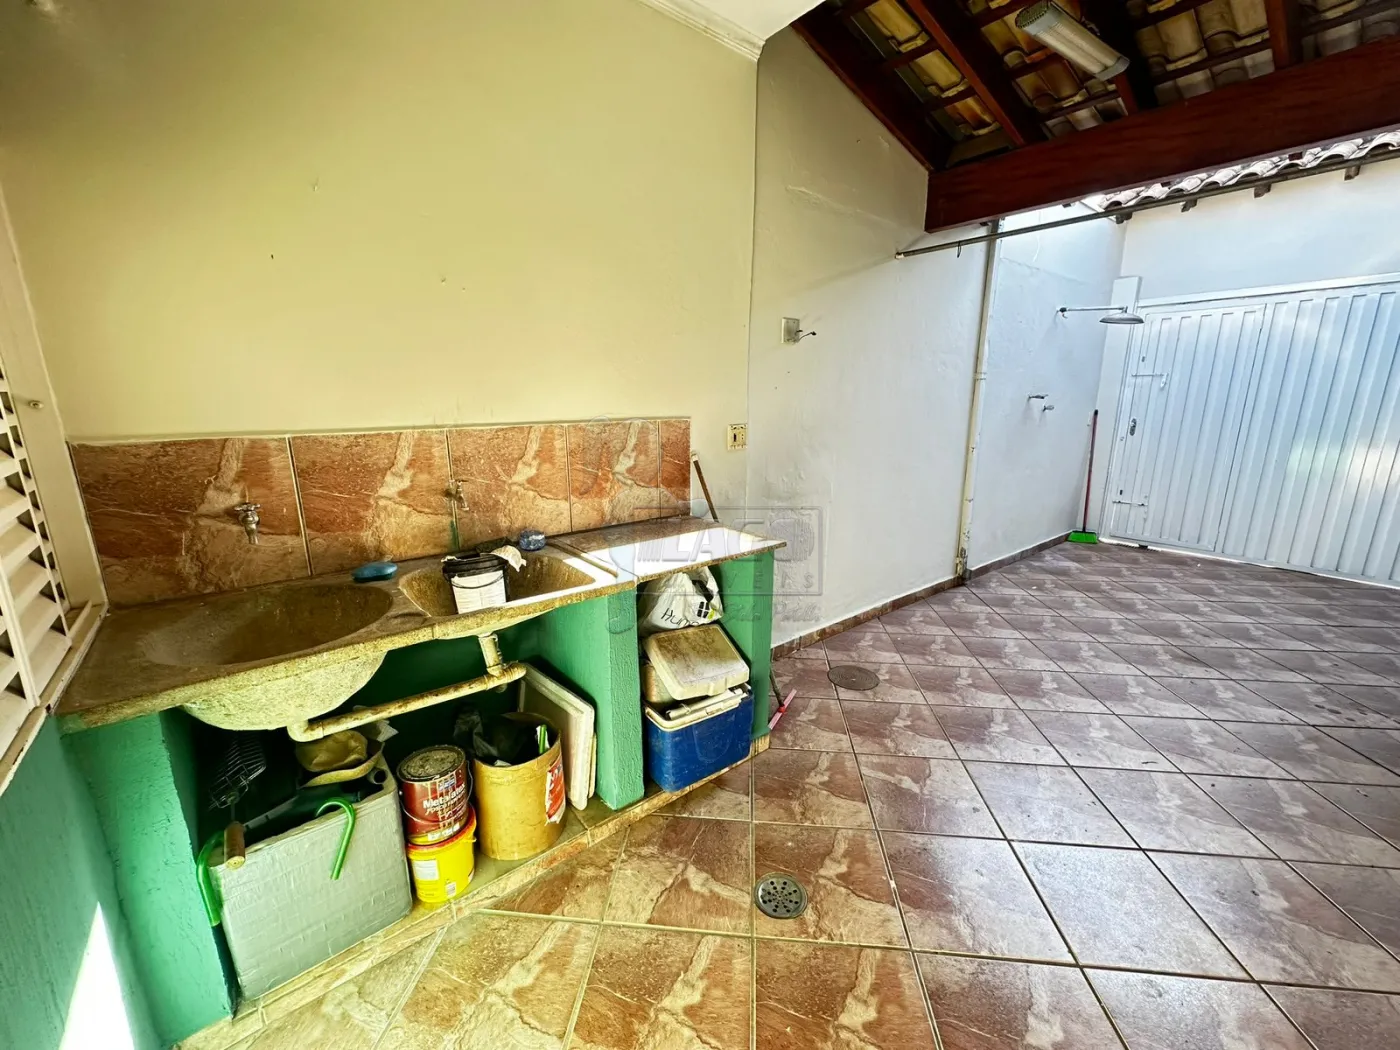 Comprar Casa / Padrão em Ribeirão Preto R$ 330.000,00 - Foto 17